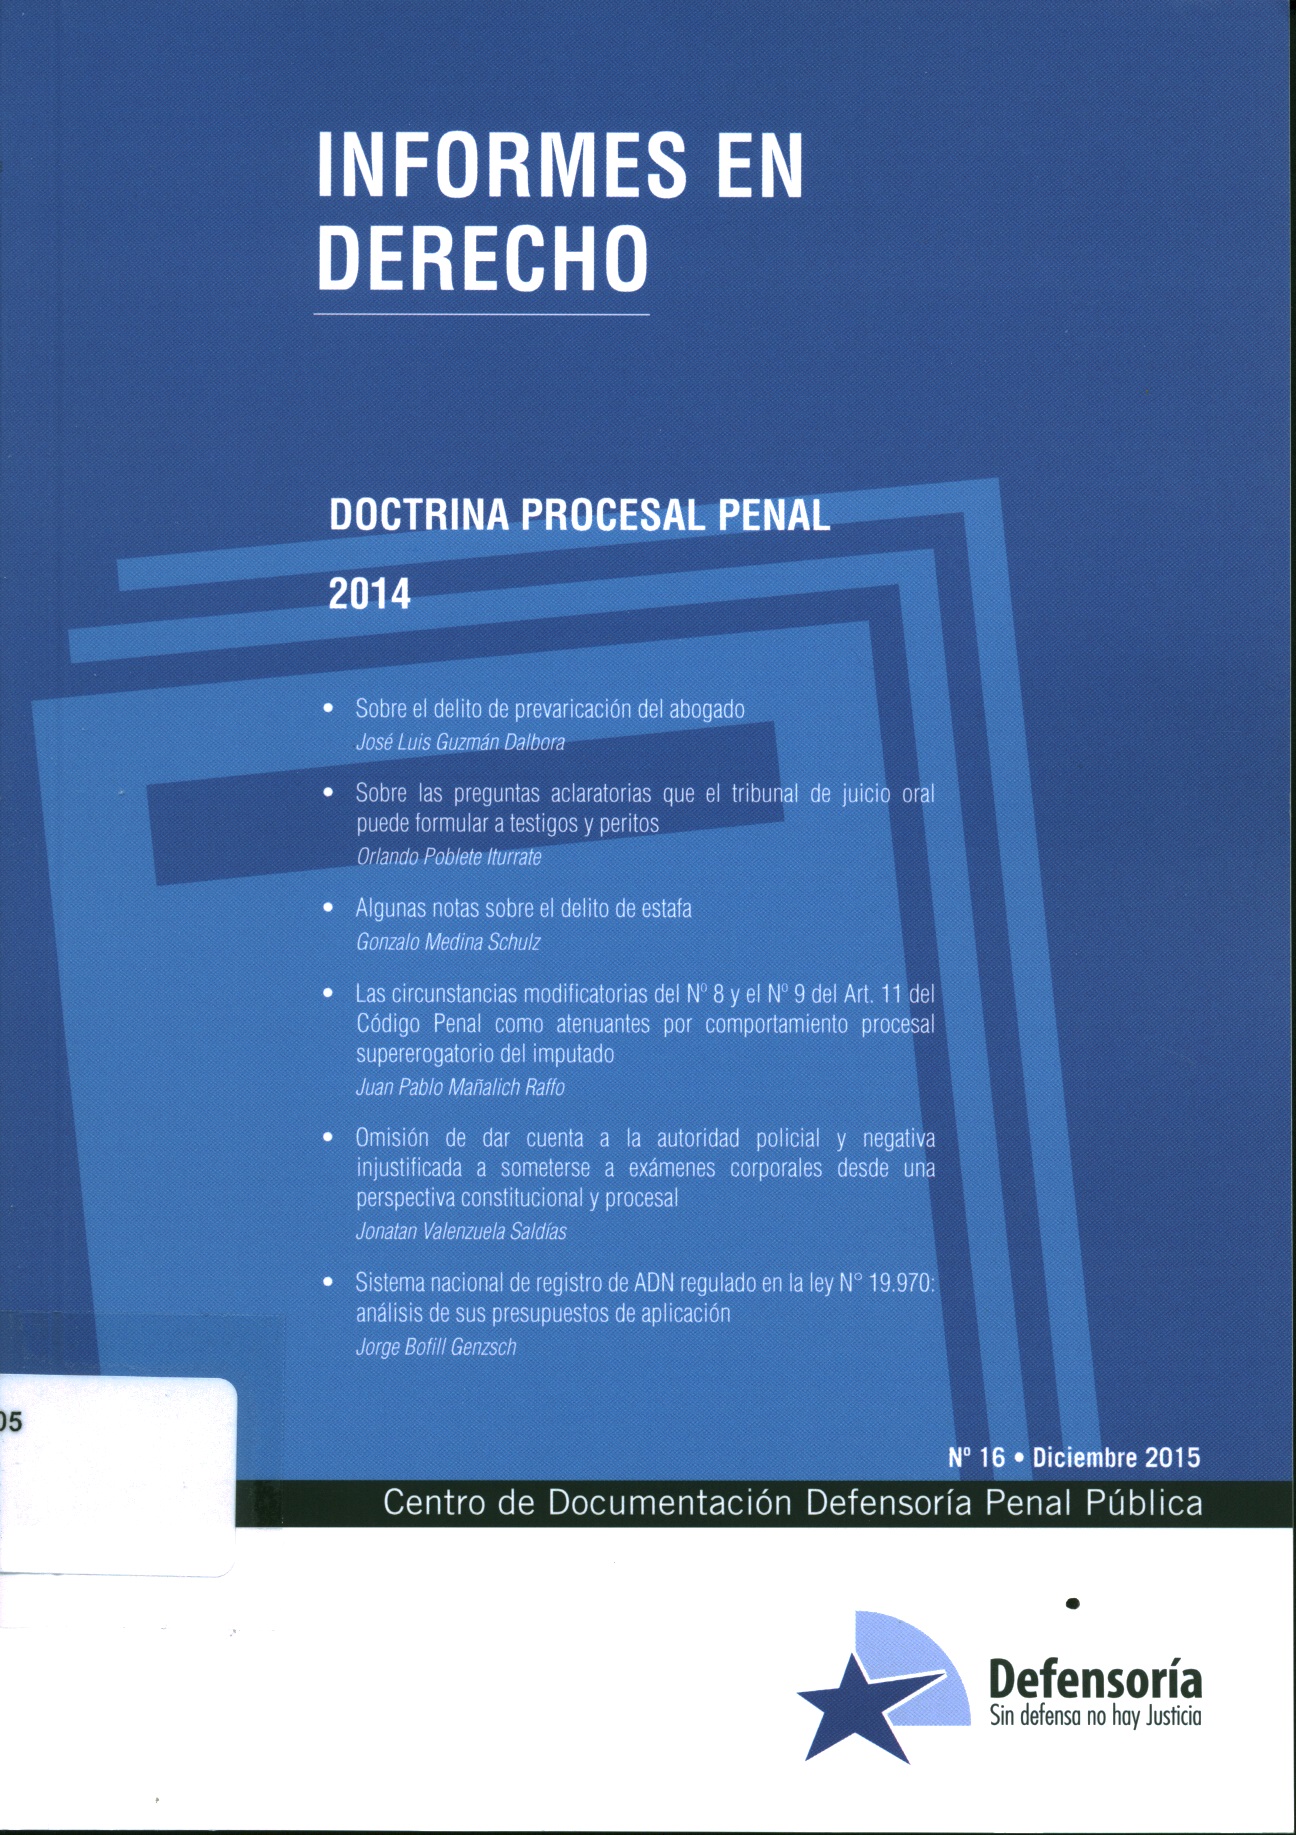 Doctrina procesal penal 2014